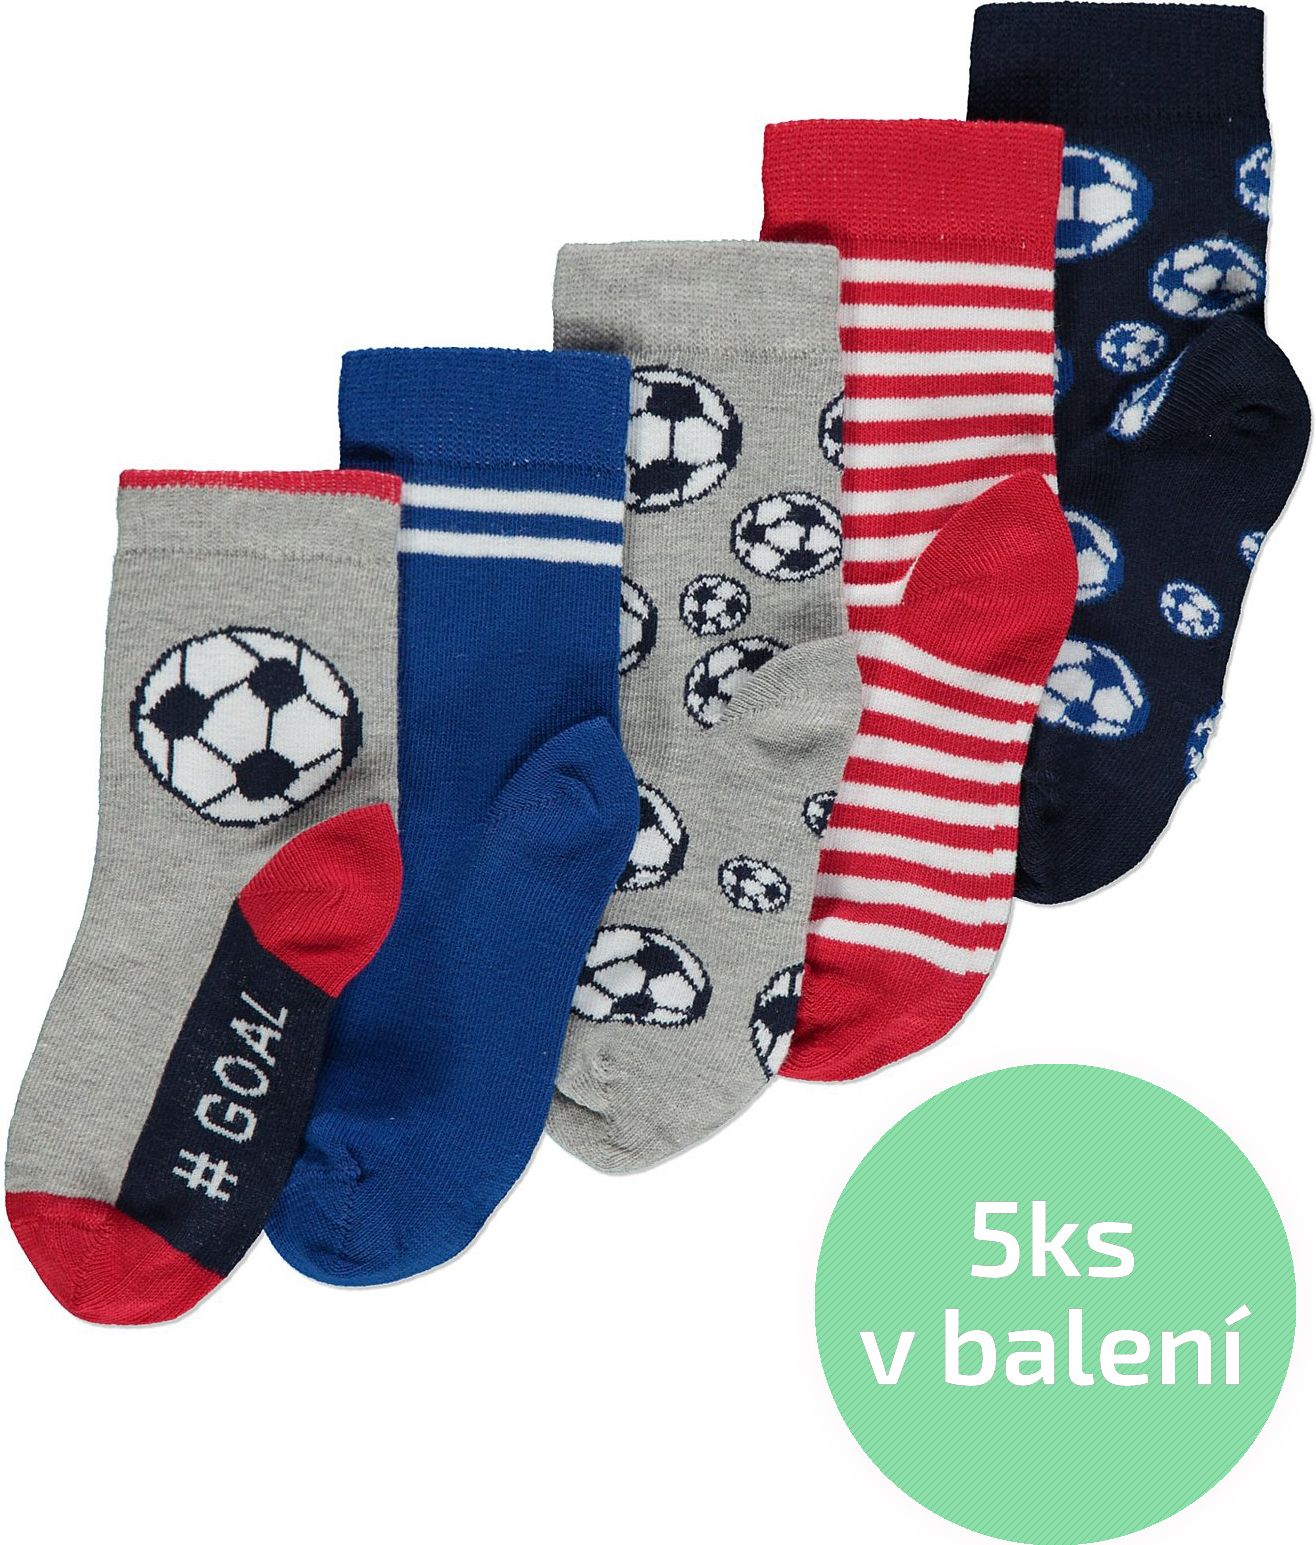 Chlapecké ponožky GEORGE, 5ks v balení, motiv fotbal Velikost: EU 23 - 26.5 (2 - 3 roky) - obrázek 1